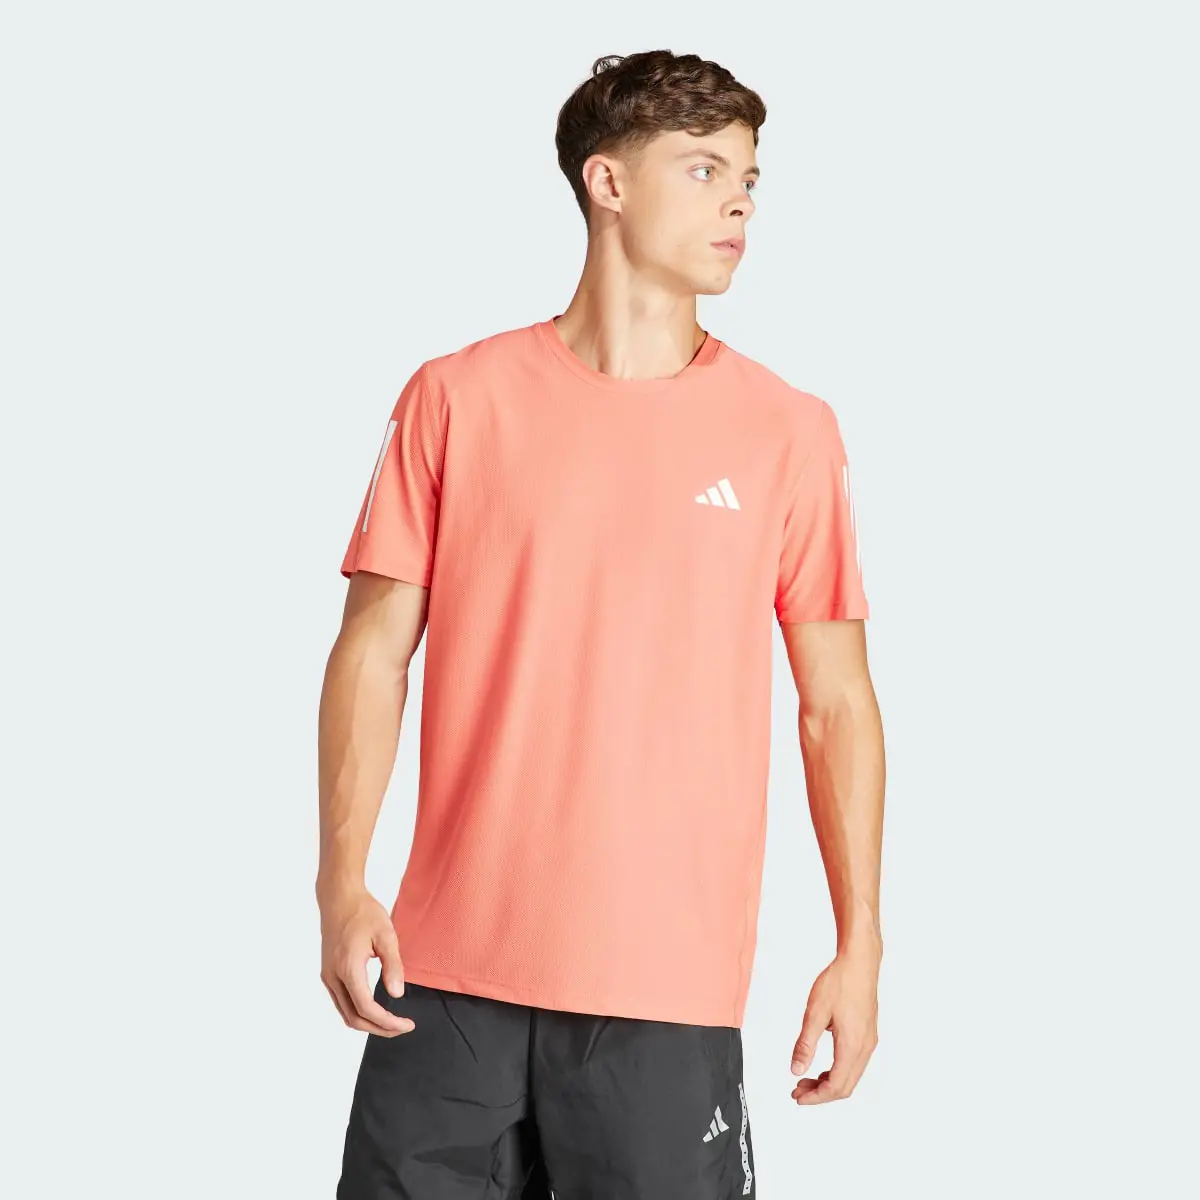 Adidas T-shirt Own the Run. 2